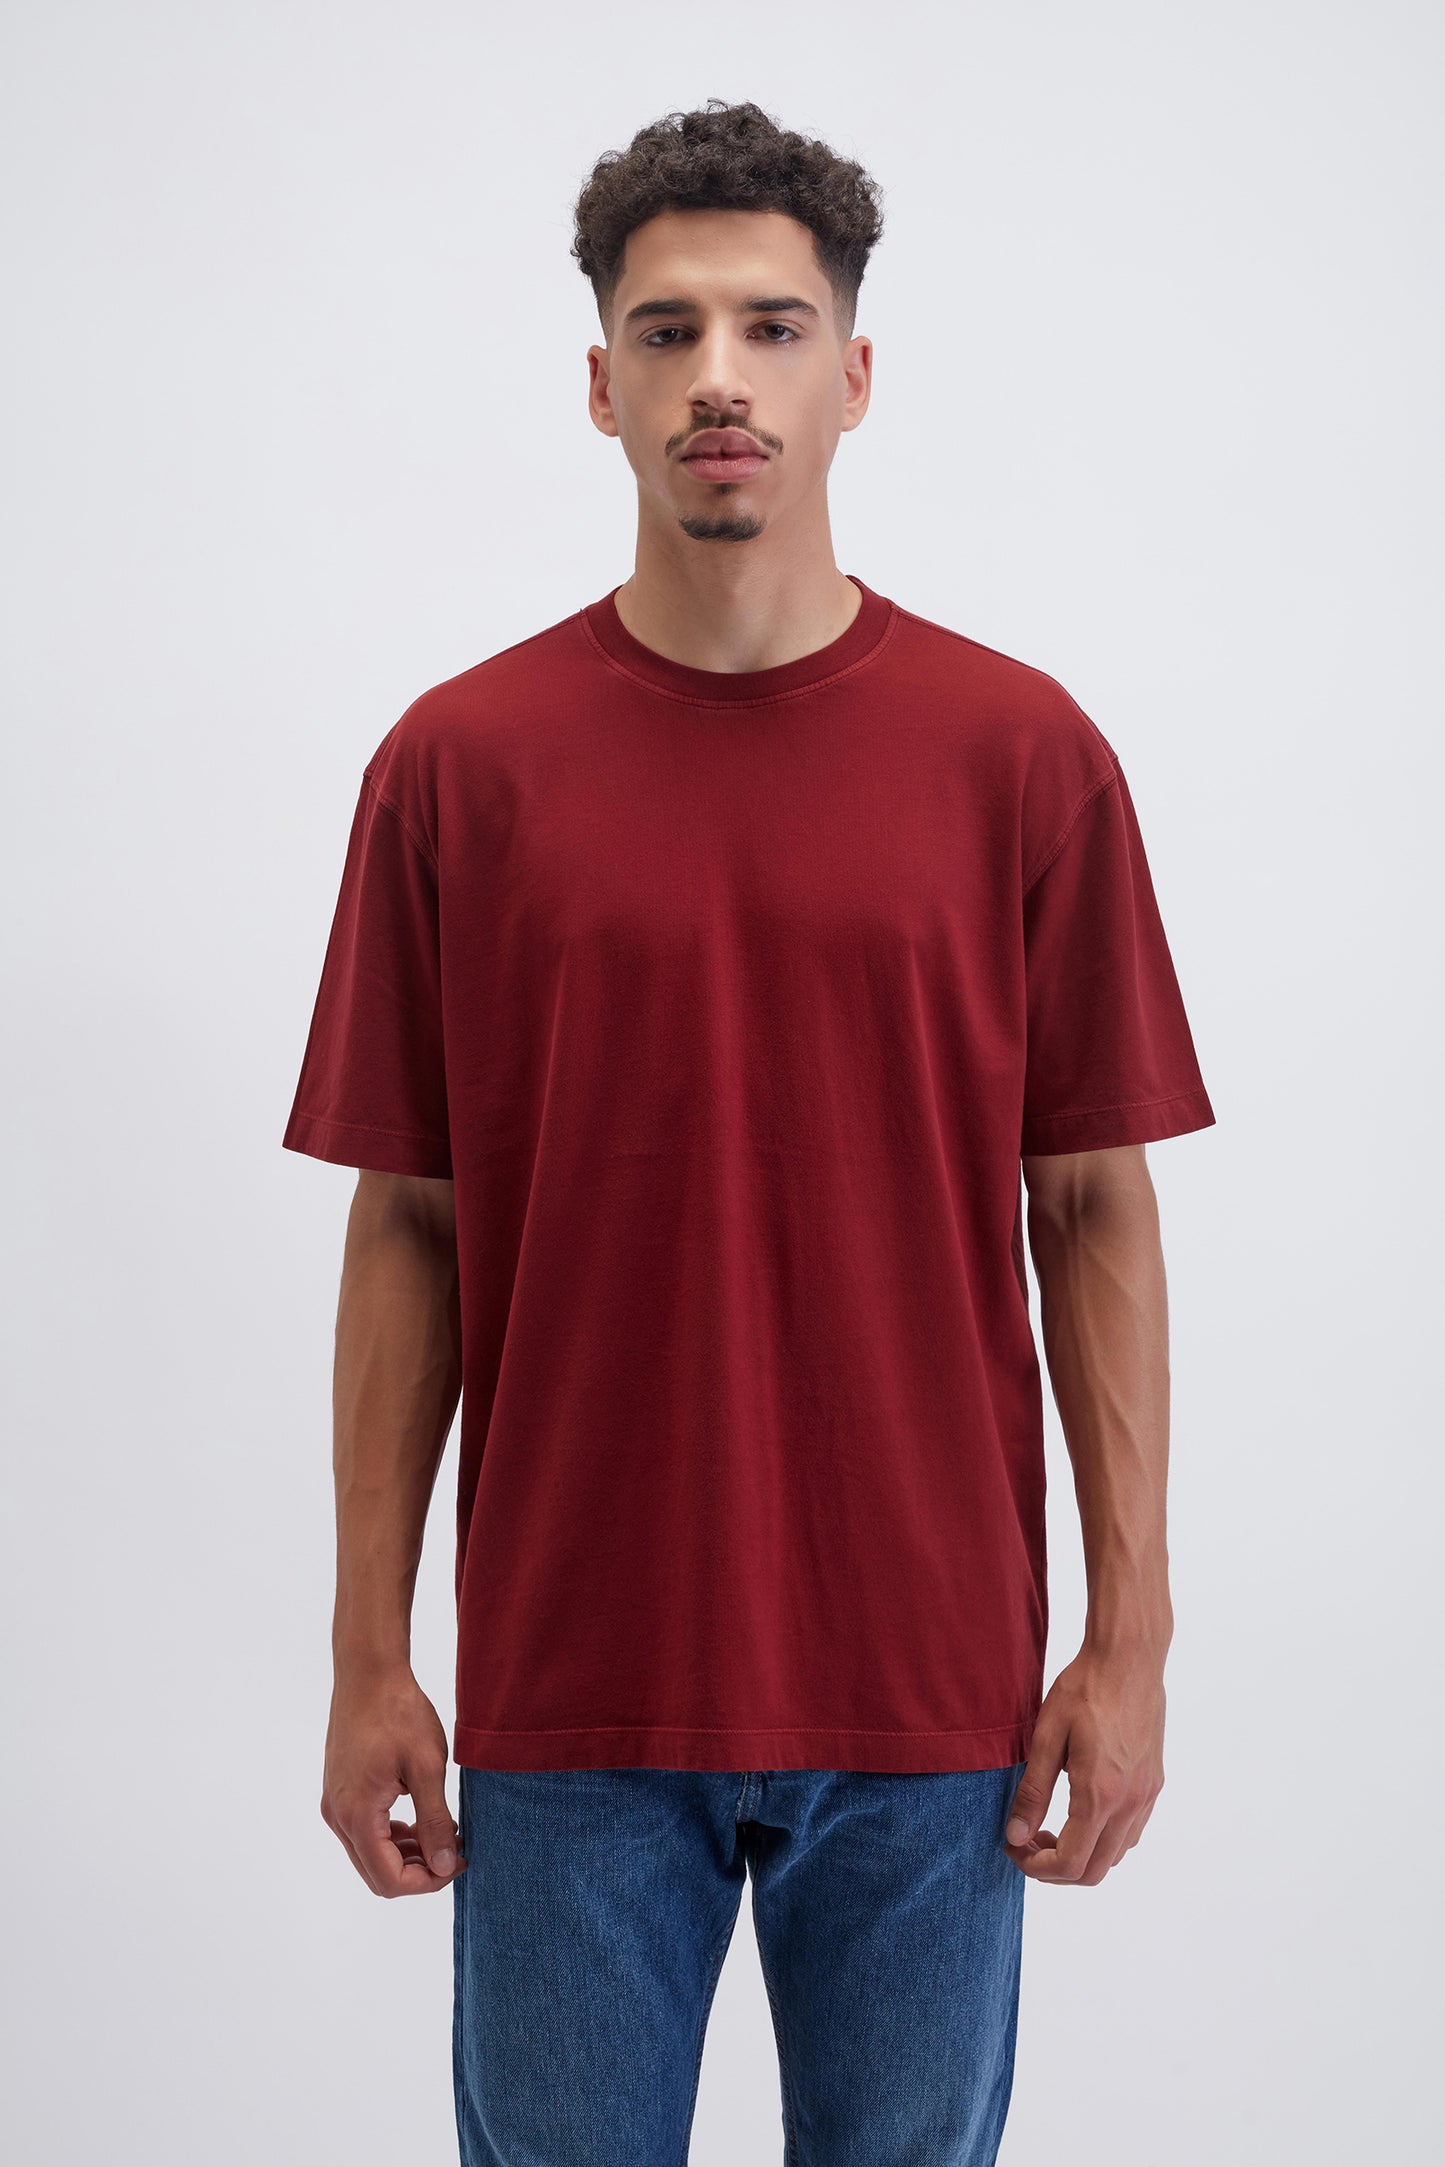 190/310 - T-shirt Homem